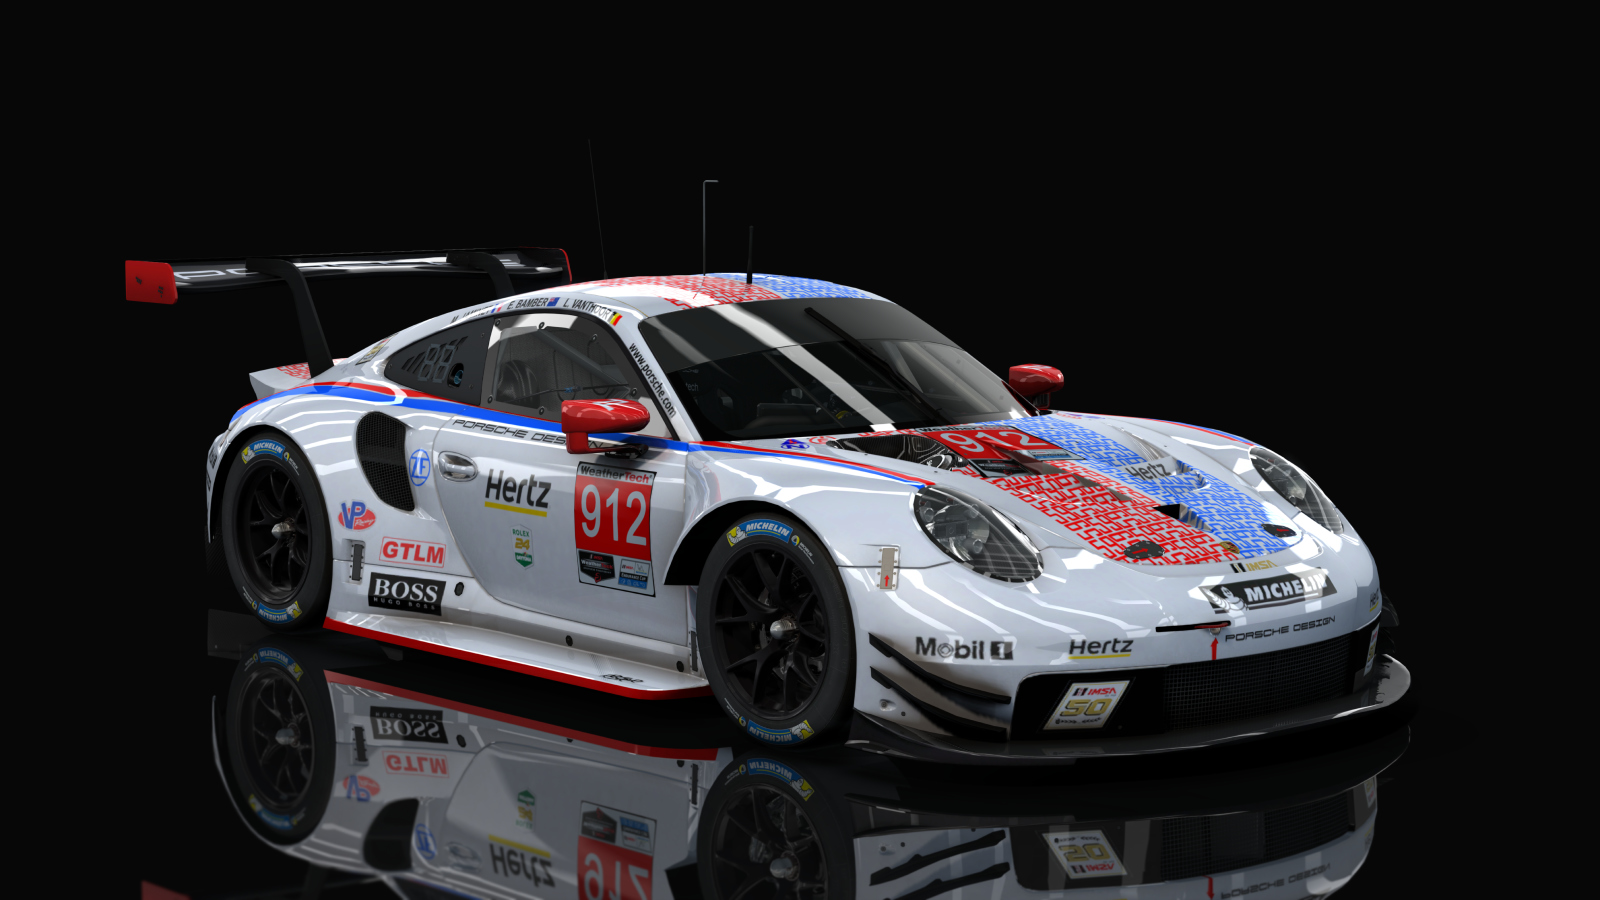 GTLM Porsche 911 RSR GTE IMSA (AC-Friends), skin 912